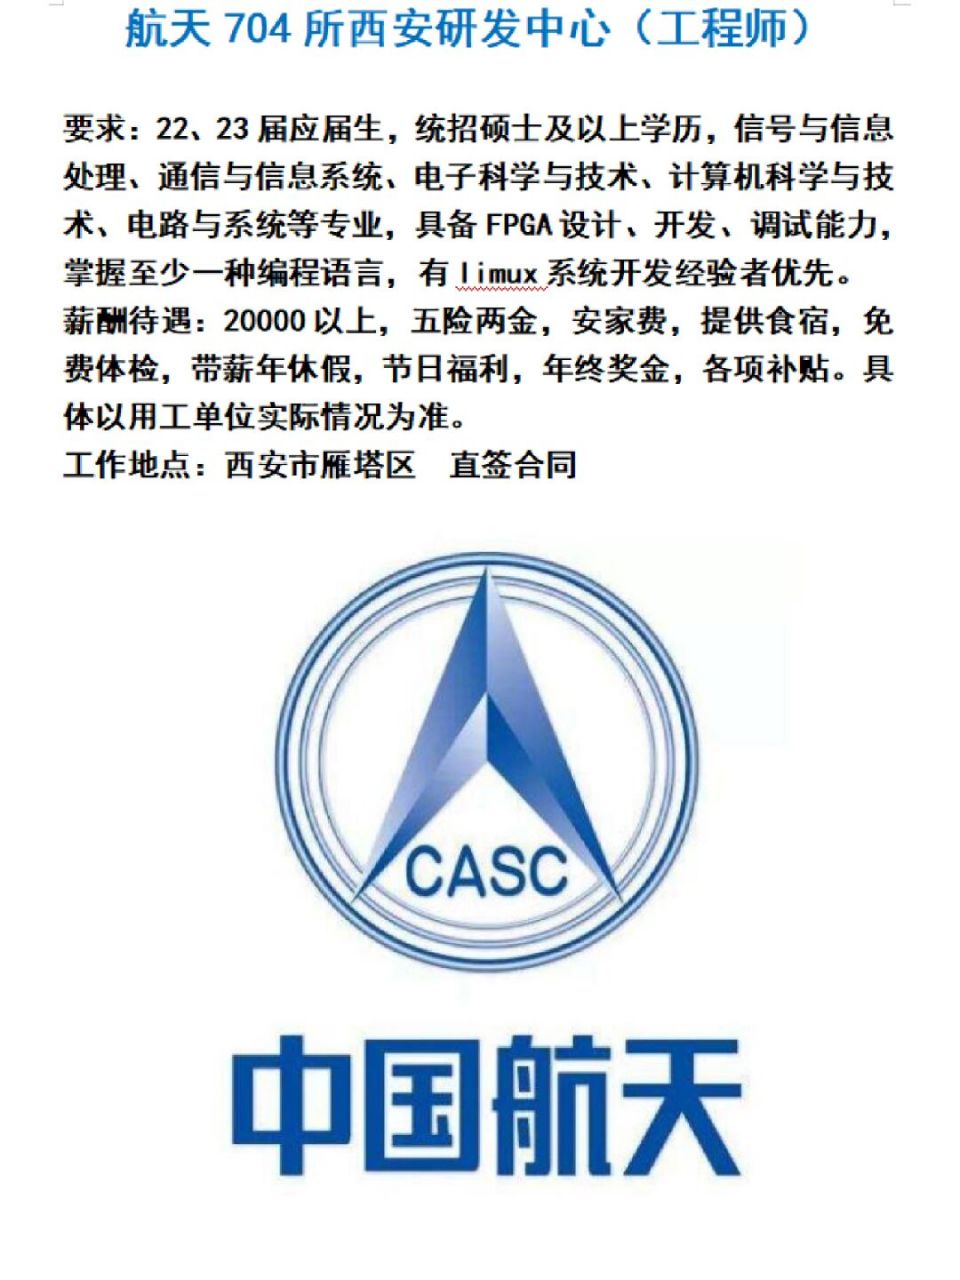 中国航天logo设计理念图片